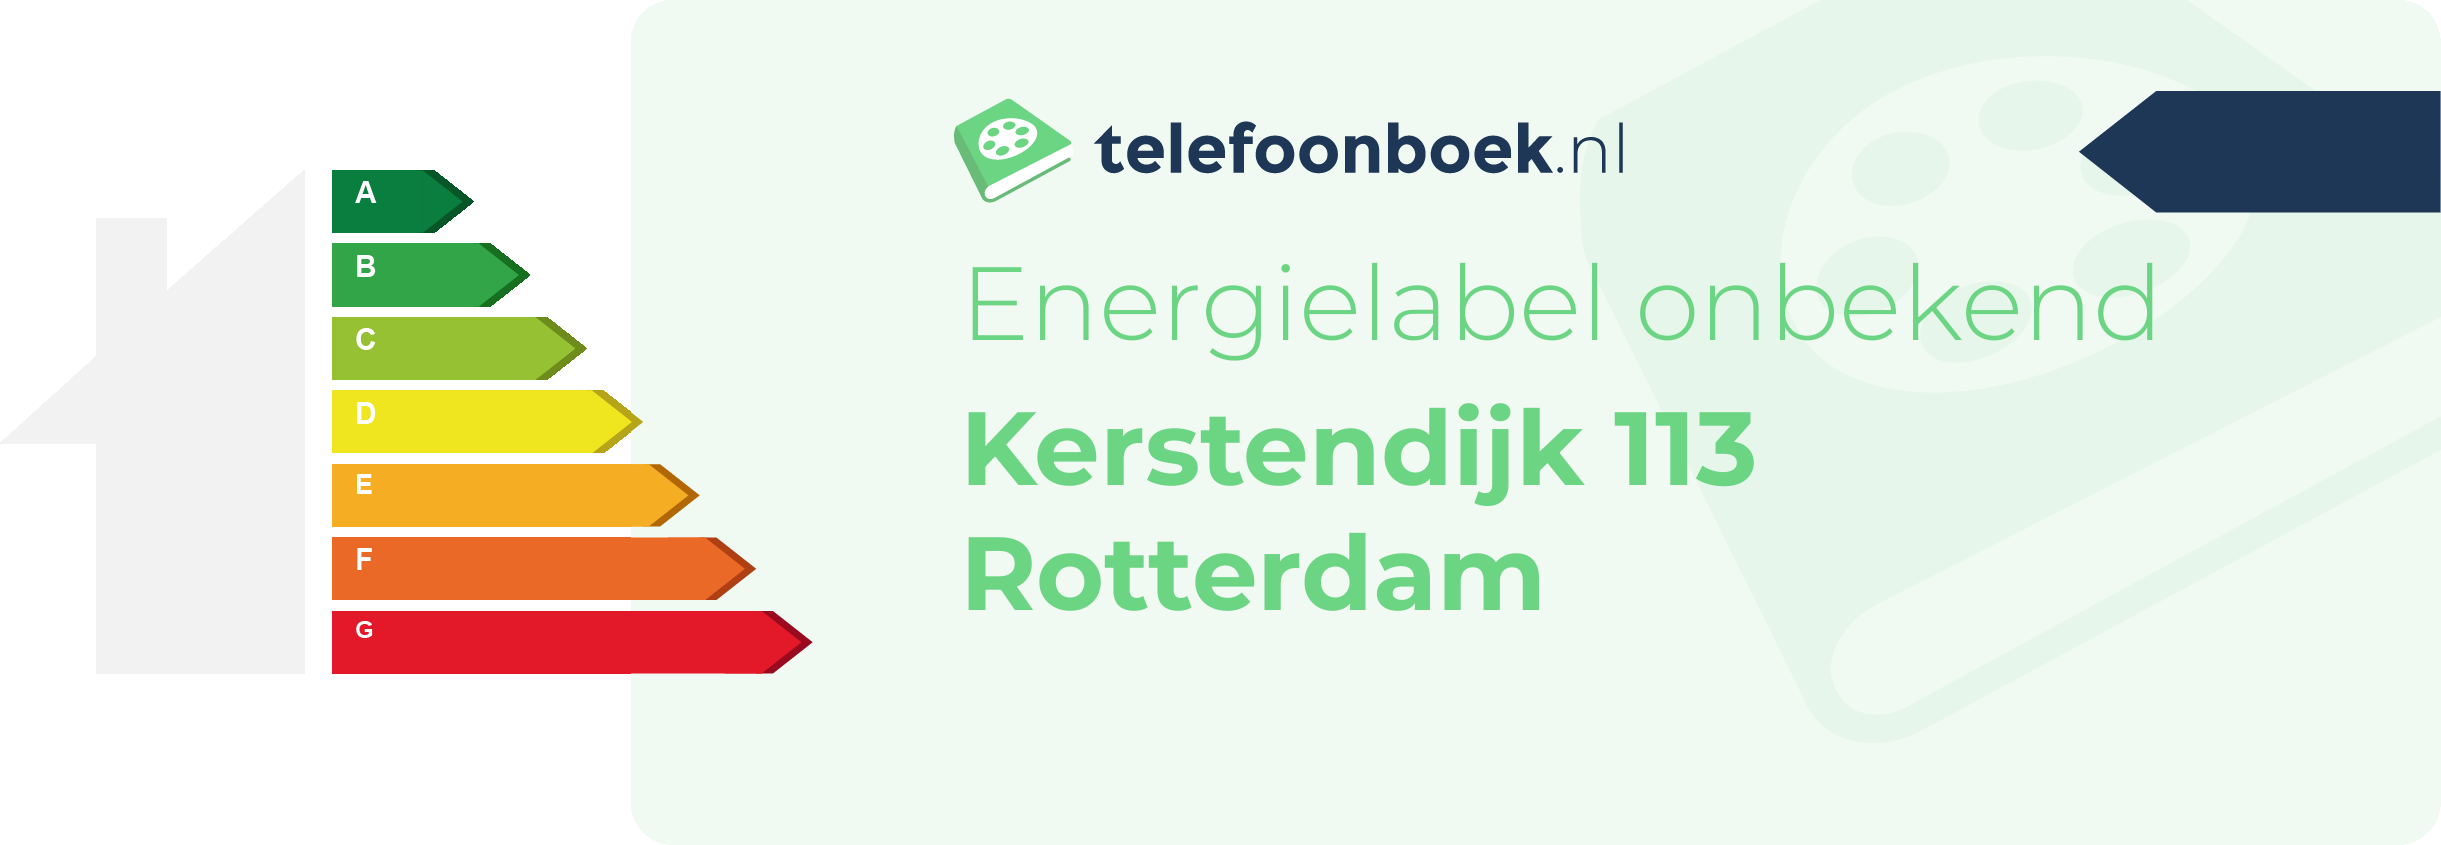 Energielabel Kerstendijk 113 Rotterdam